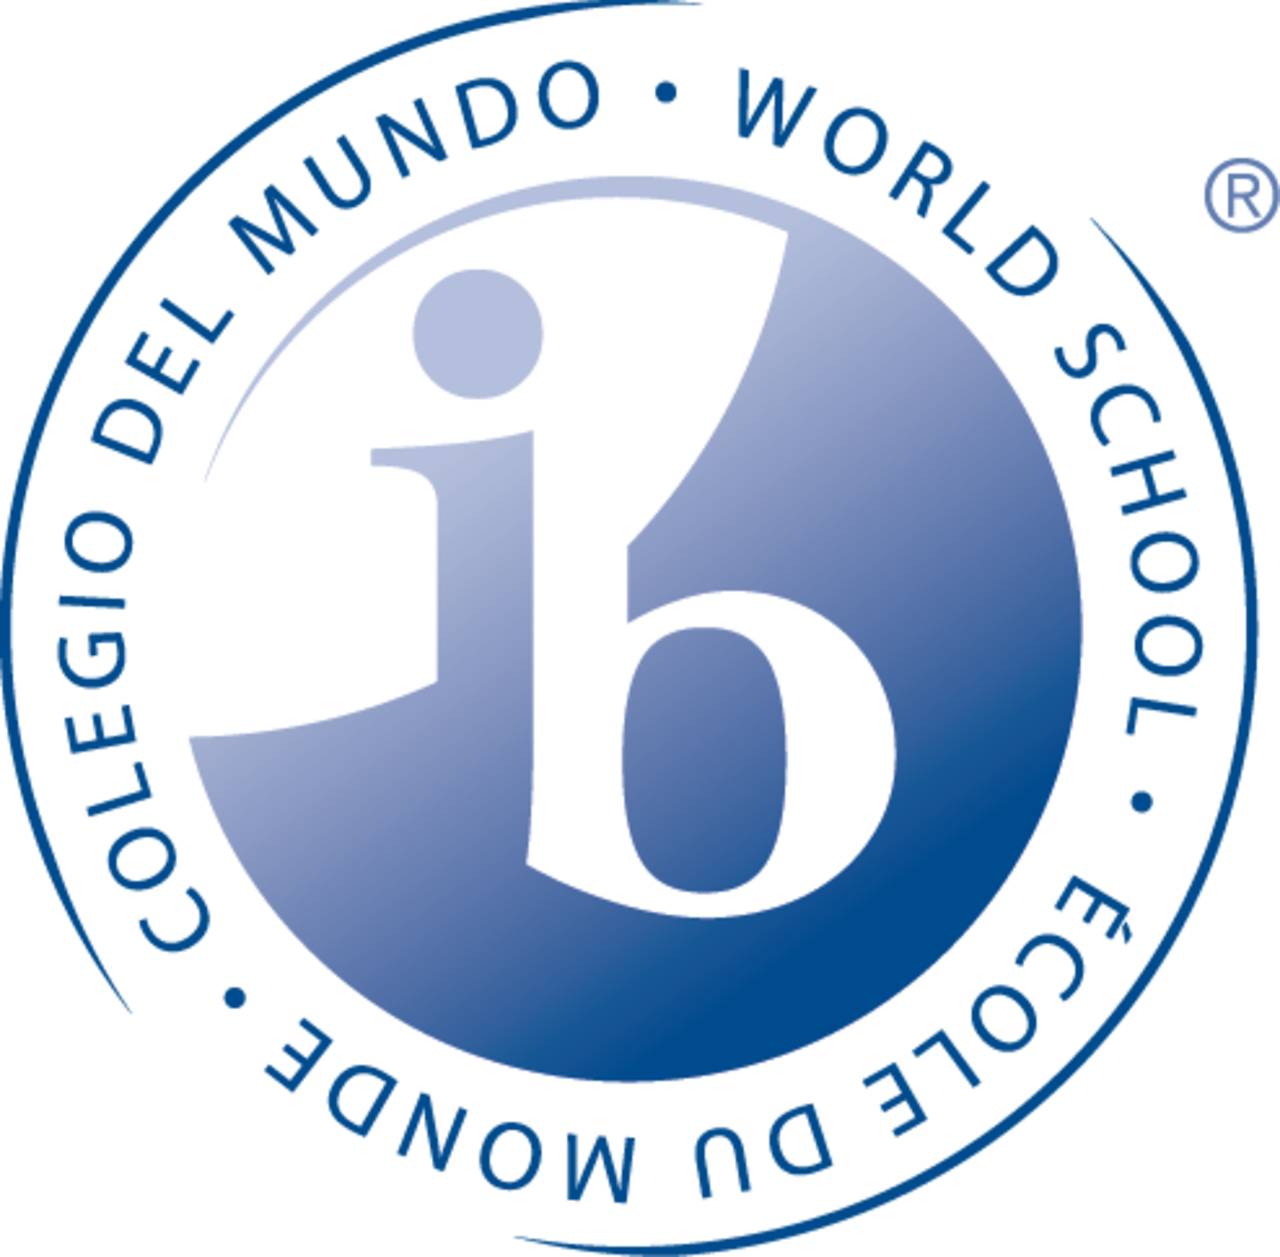 zertifizierte IB World School